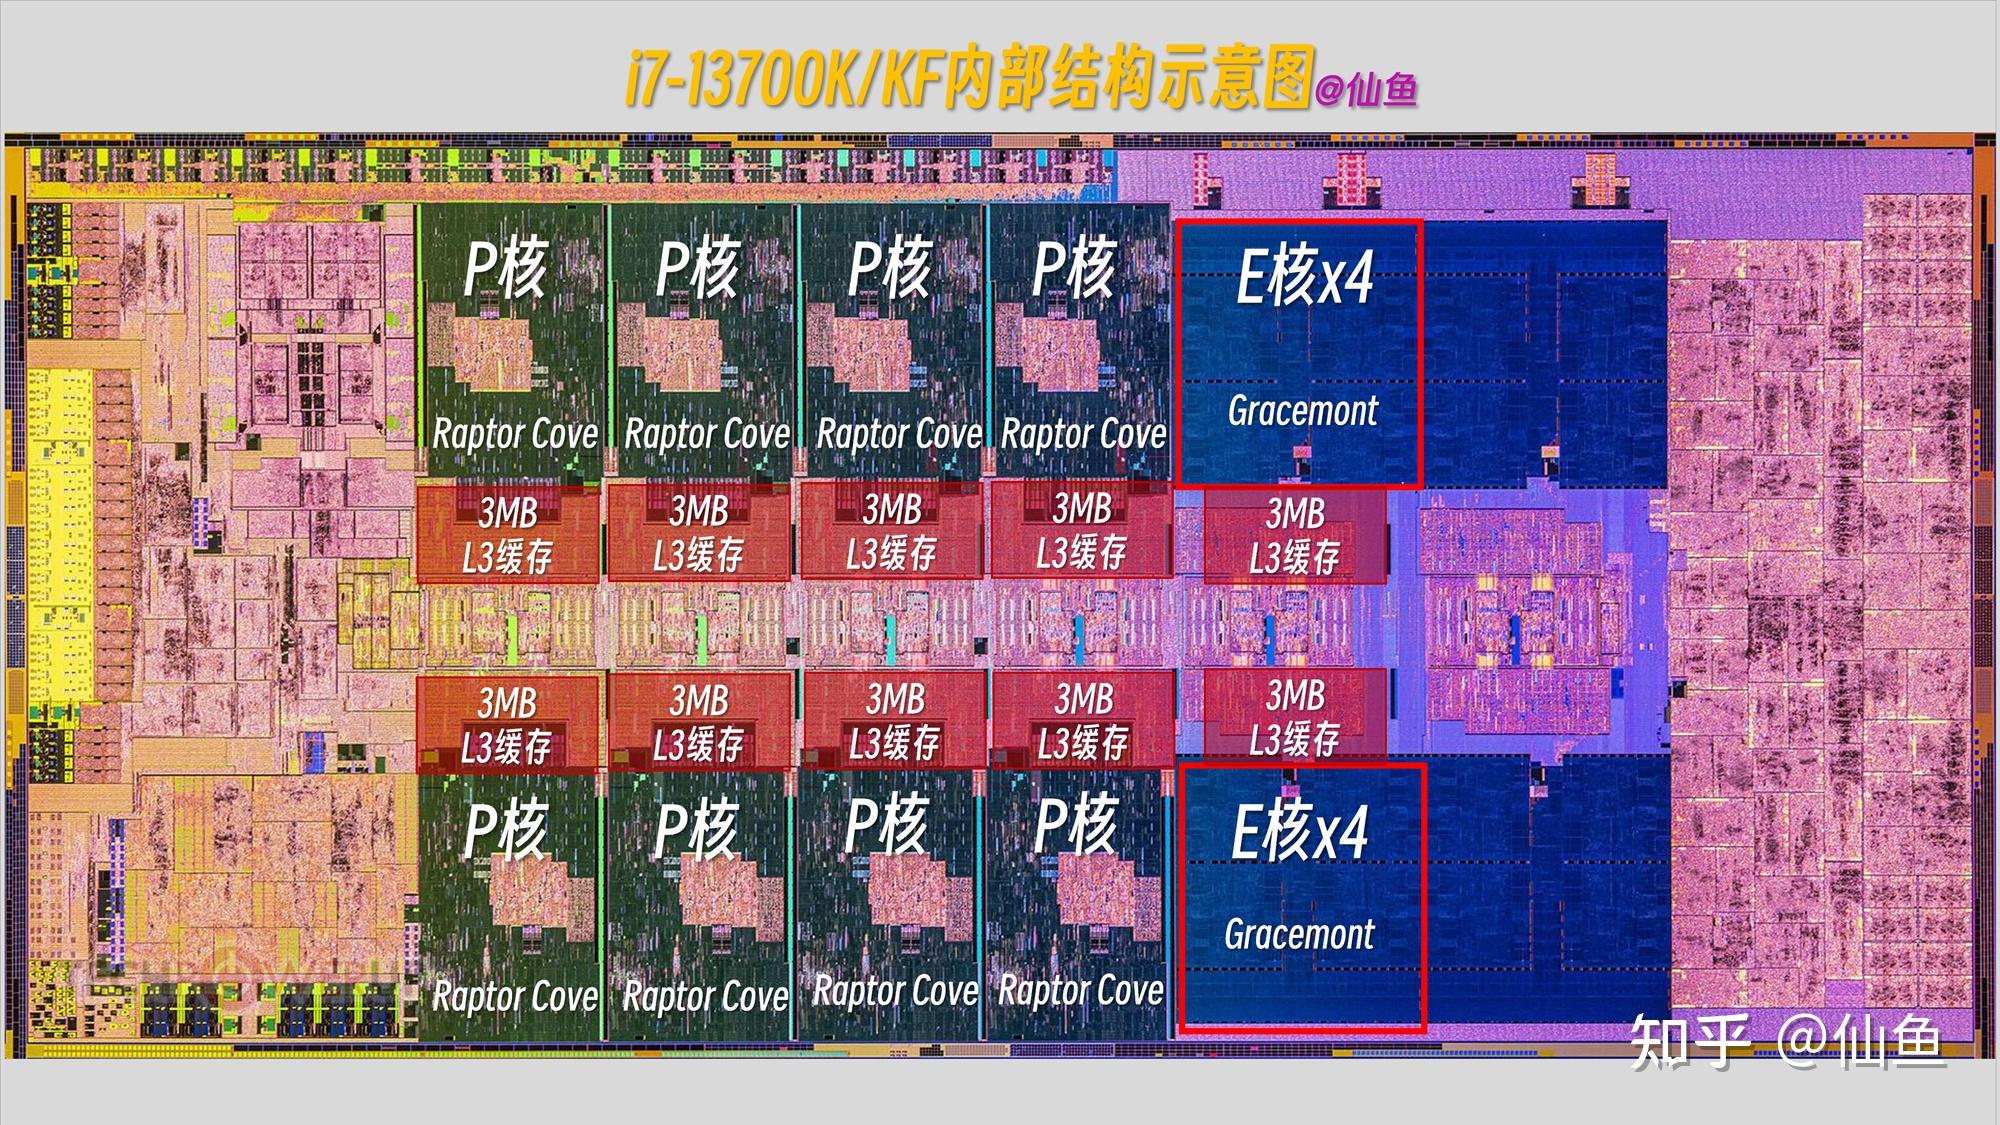 深度解析DDR6与DDR5内存脚位图设计：性能与兼容性的关键因素  第7张